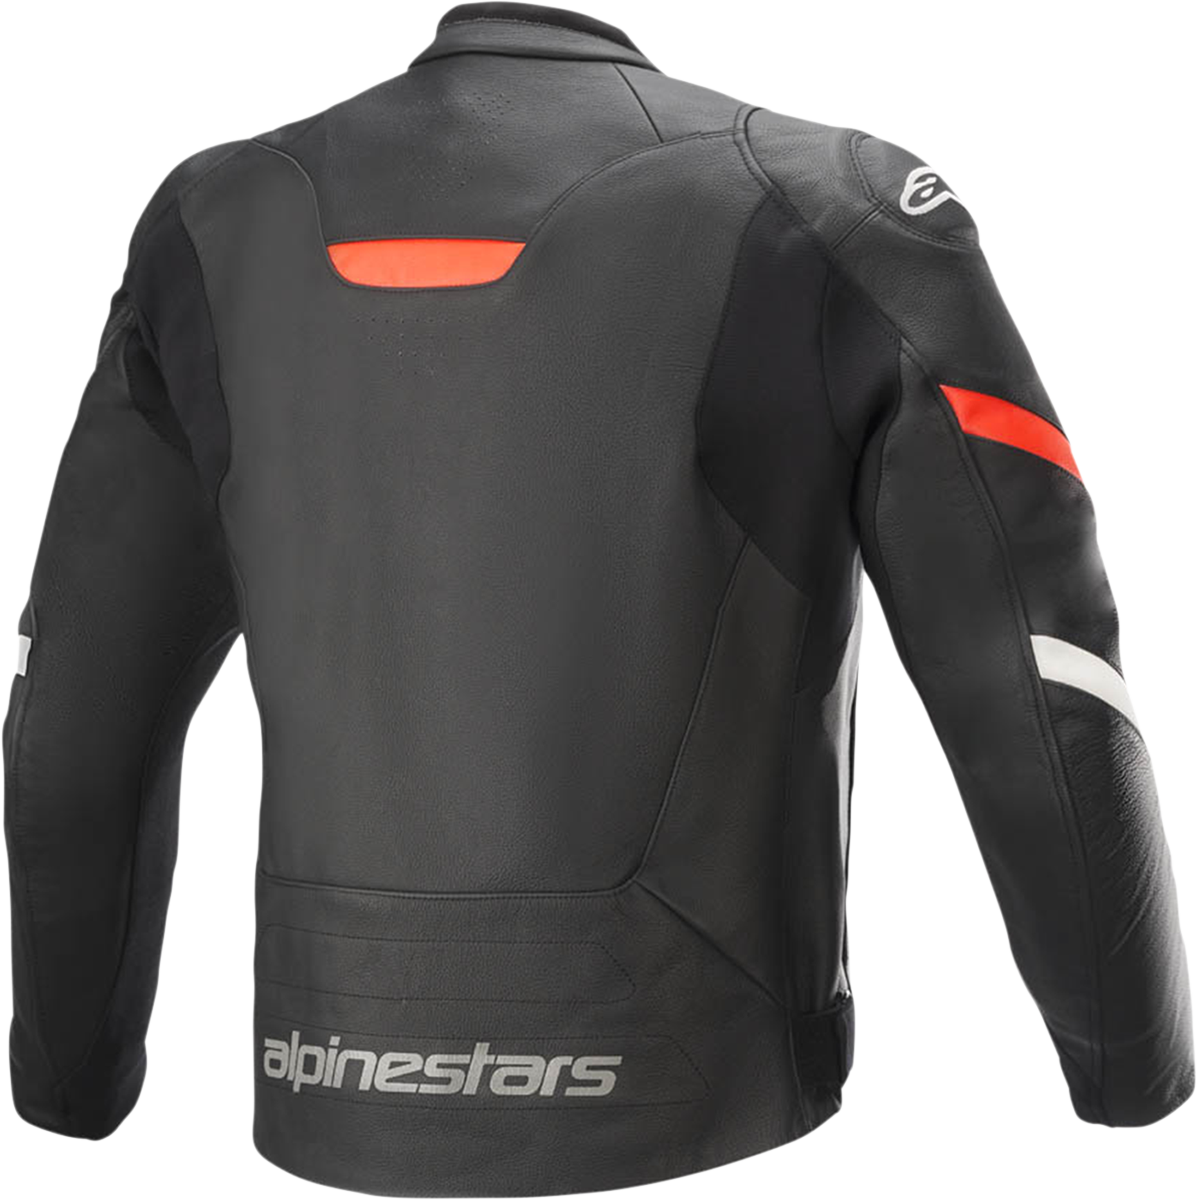 ALPINESTARS Faster v2 Leather Jacket - Black/Red - US 46 / EU 56 3103521-1030-56